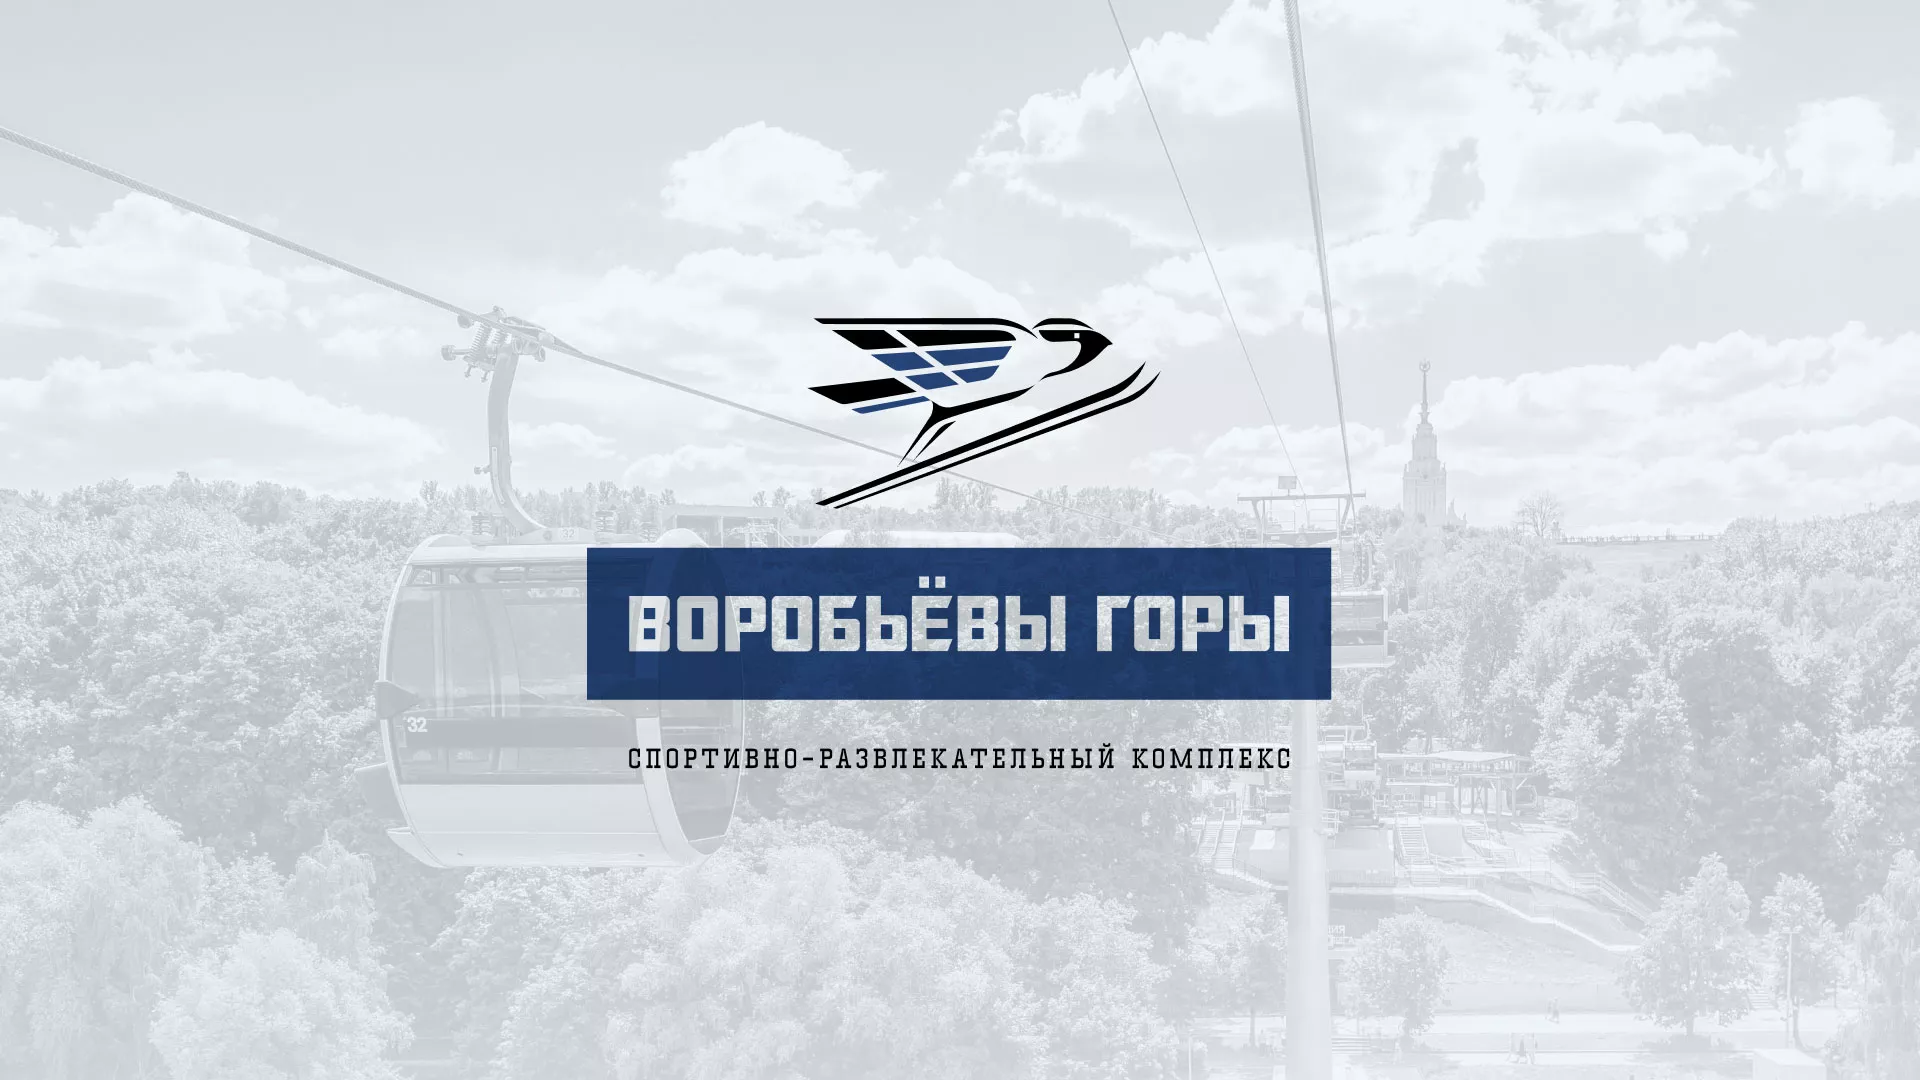 Разработка сайта в Саранске для спортивно-развлекательного комплекса «Воробьёвы горы»